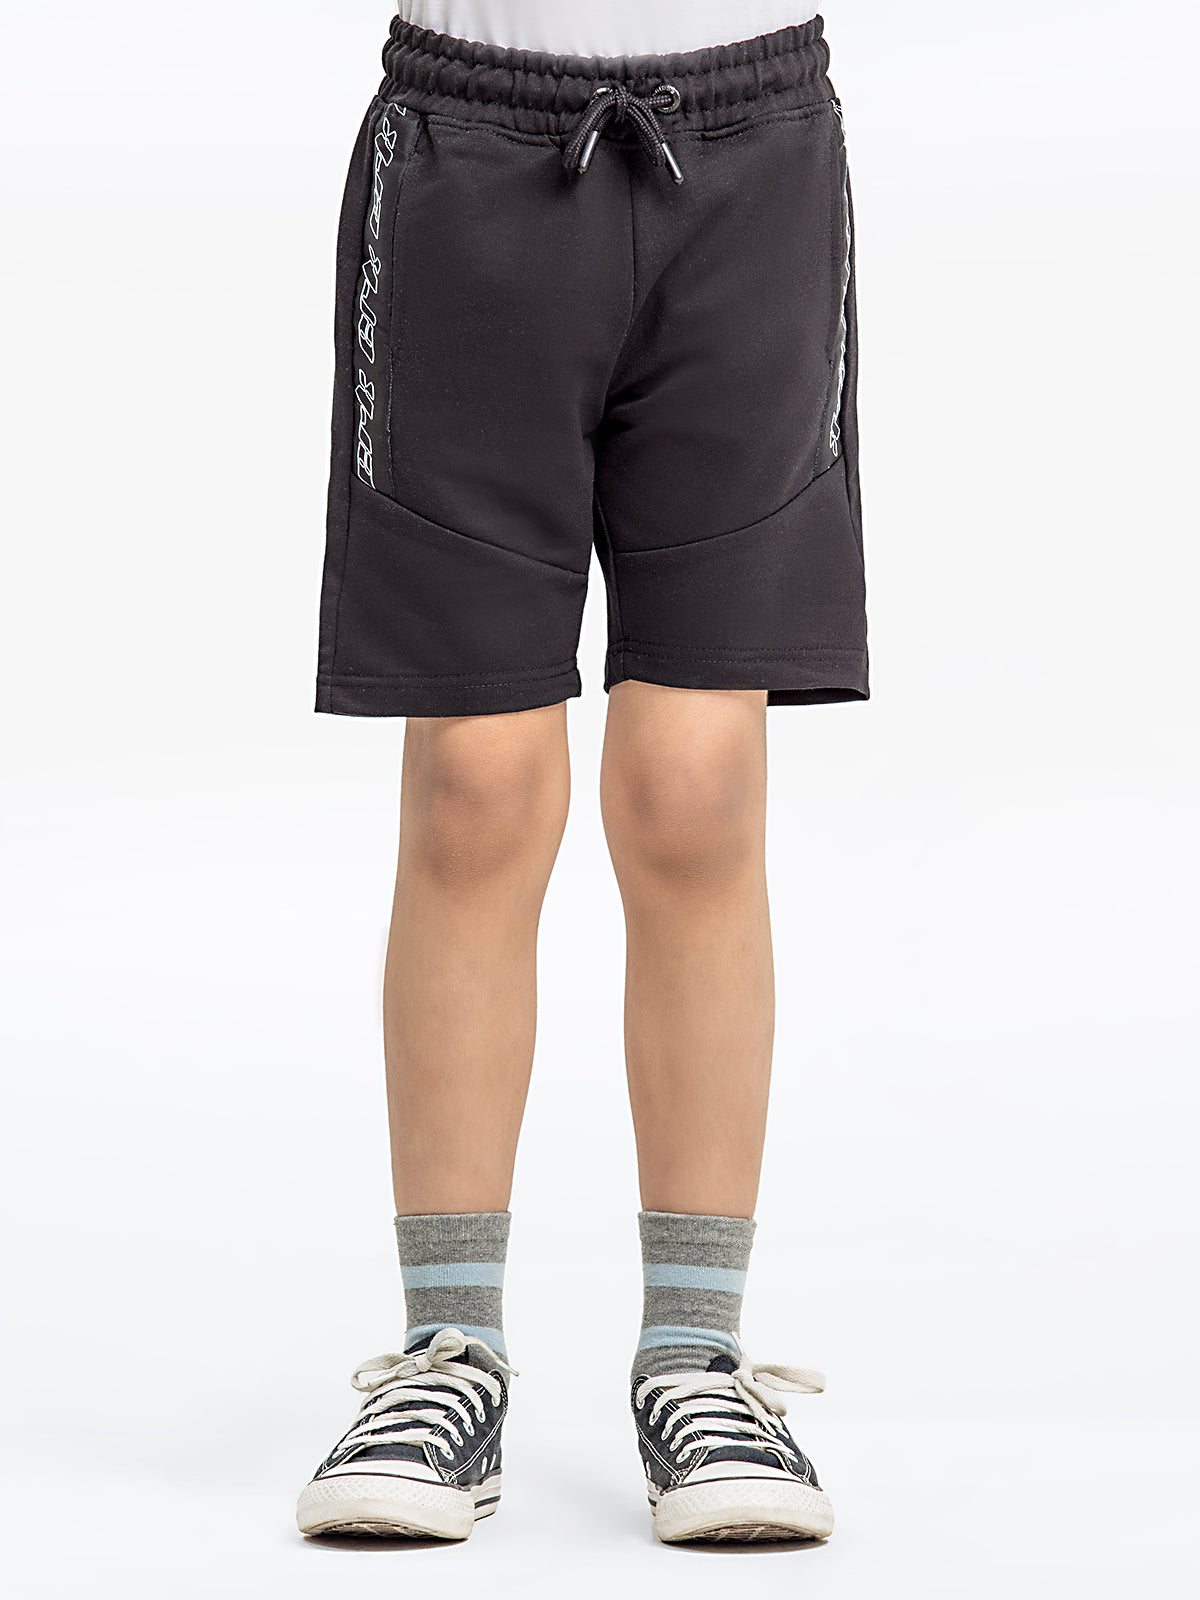 Boy's Black Shorts - EBBSK24-012